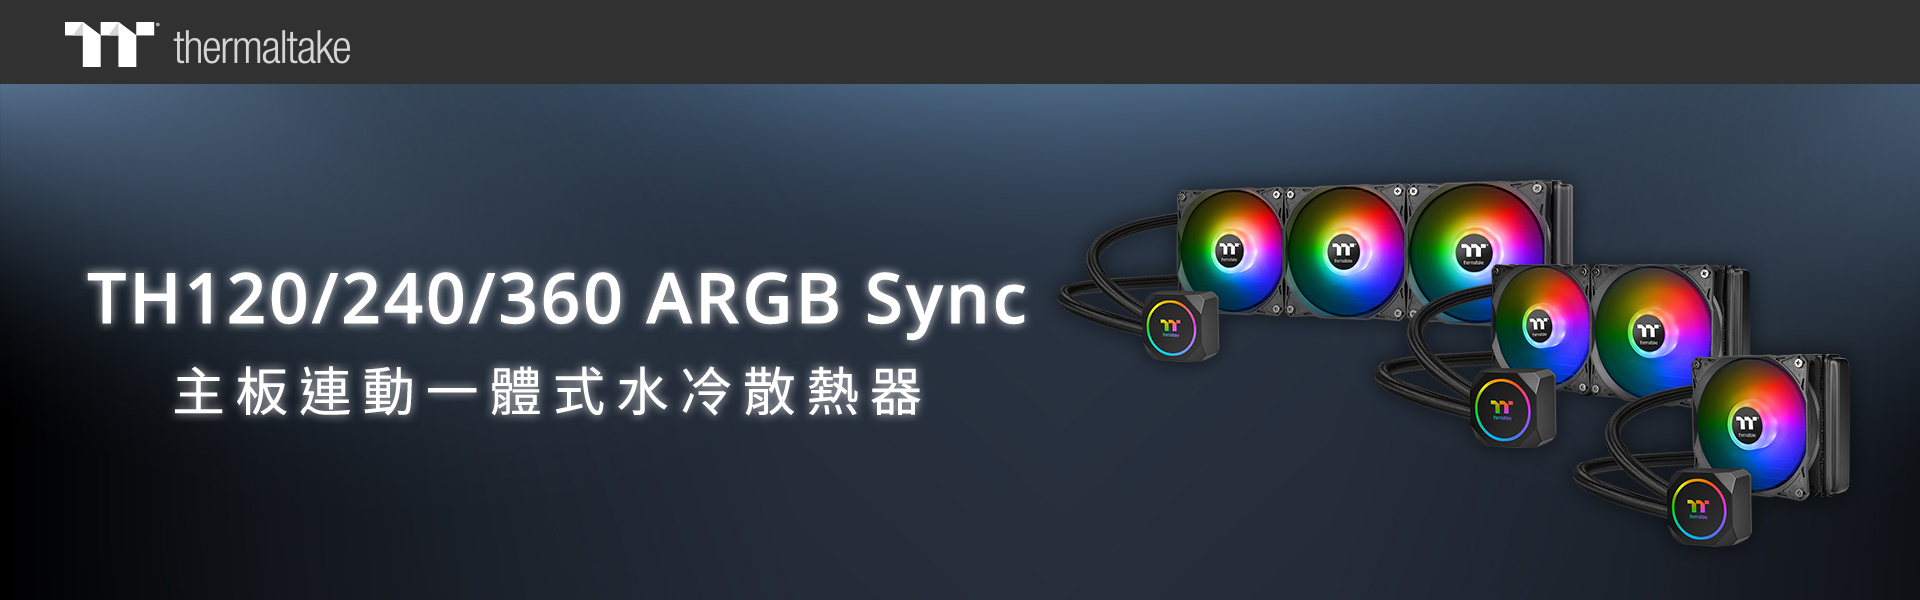 曜越公开 TH360 ARGB Sync 主板连动版一体式水冷散热器